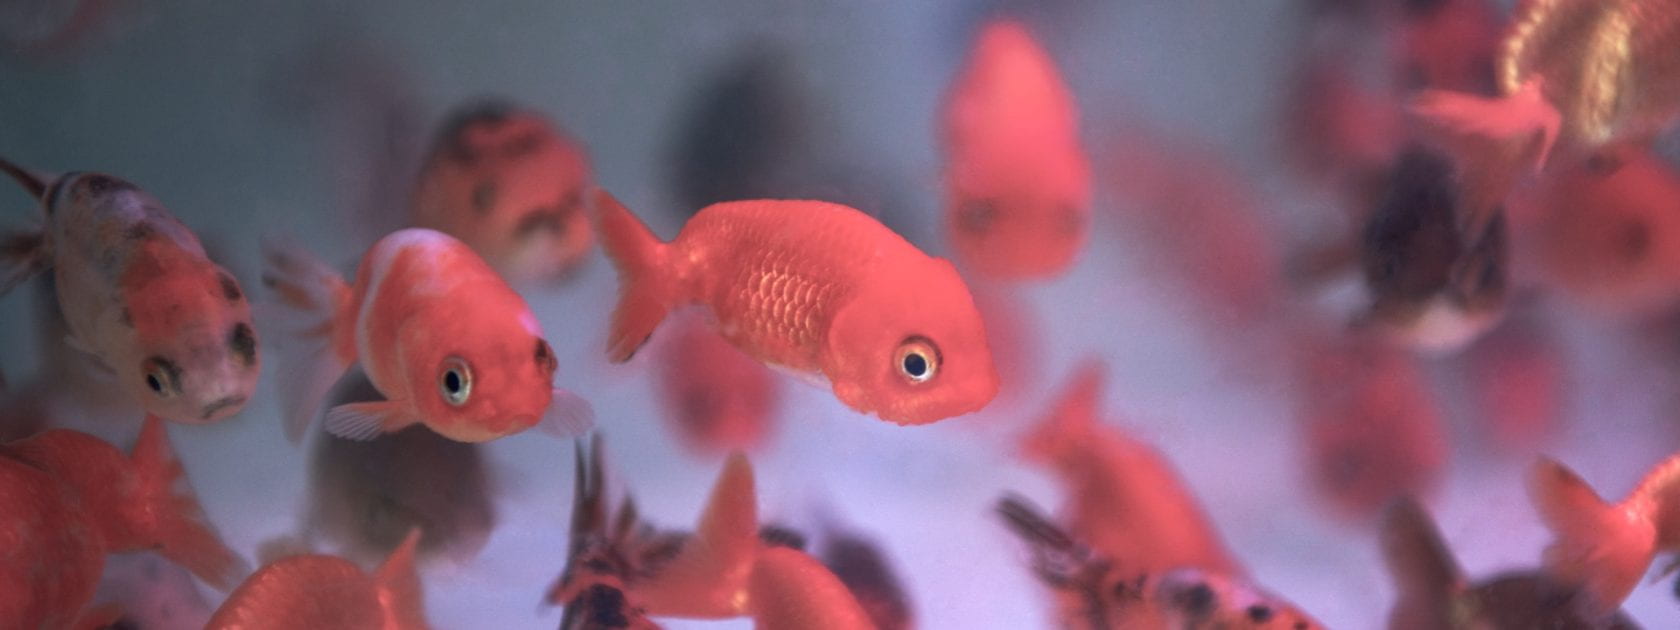 Goldfishes in an aquarium